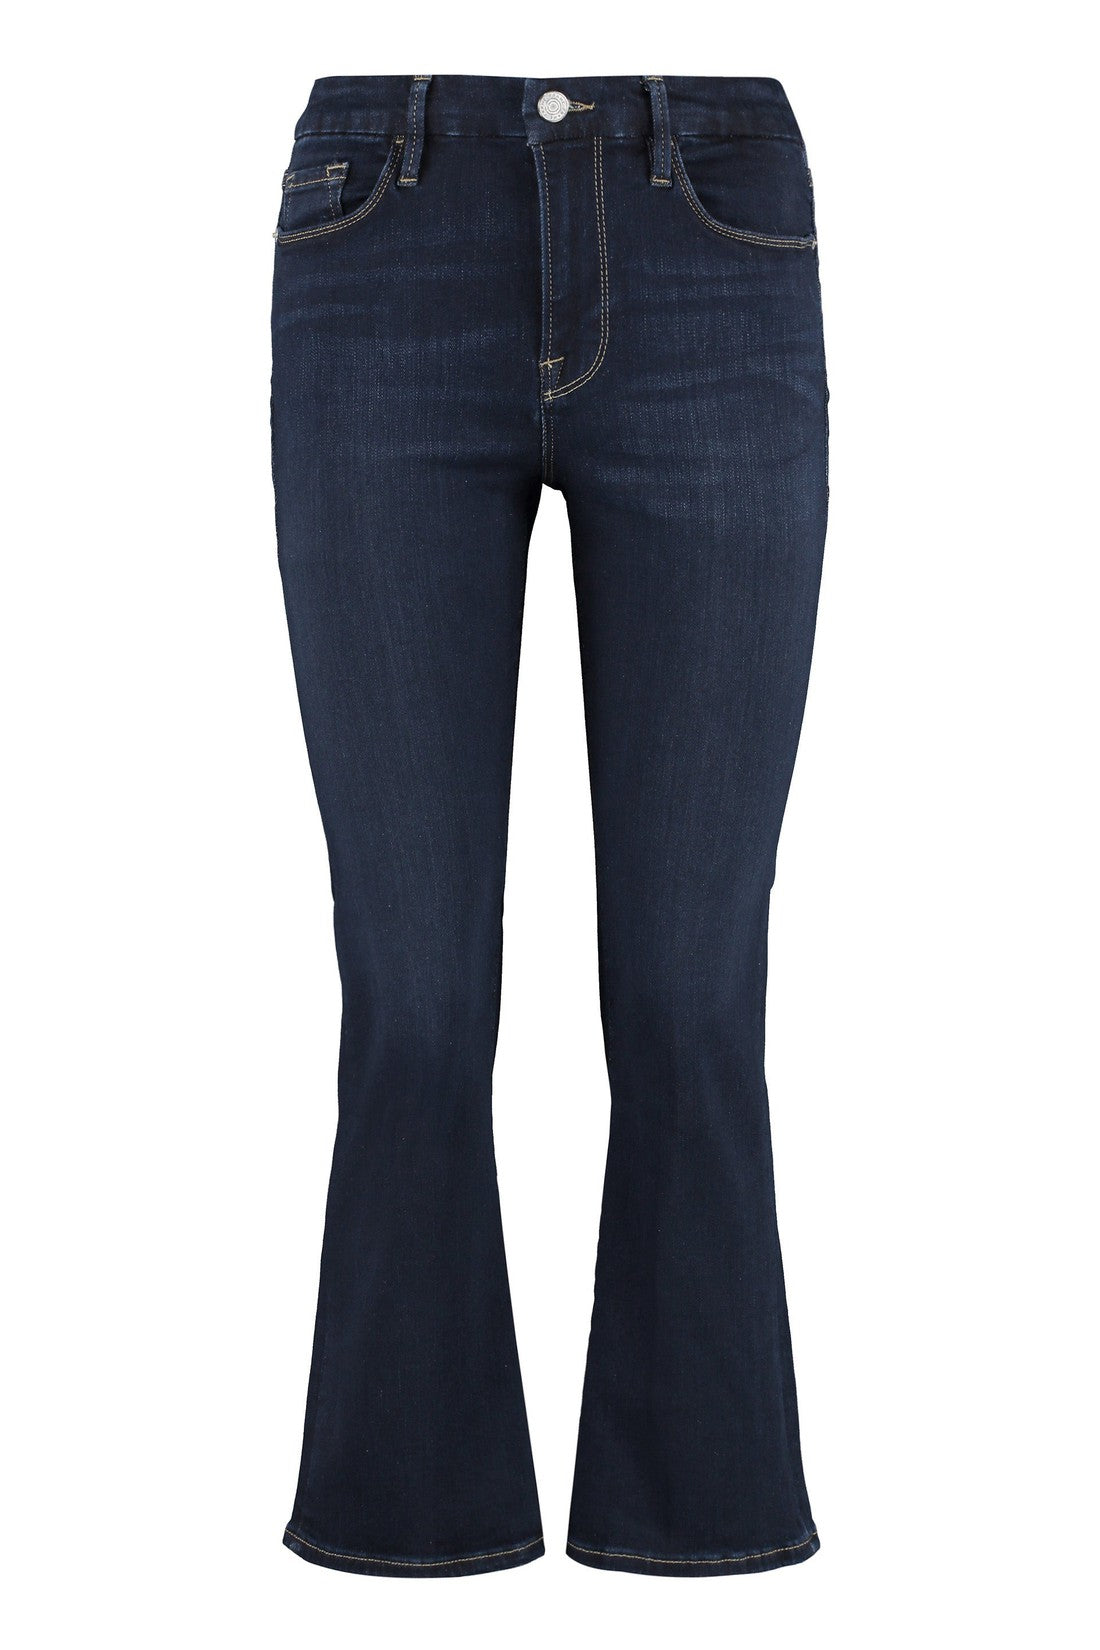 Frame-OUTLET-SALE-Le Crop Mini boot boot-cut jeans-ARCHIVIST